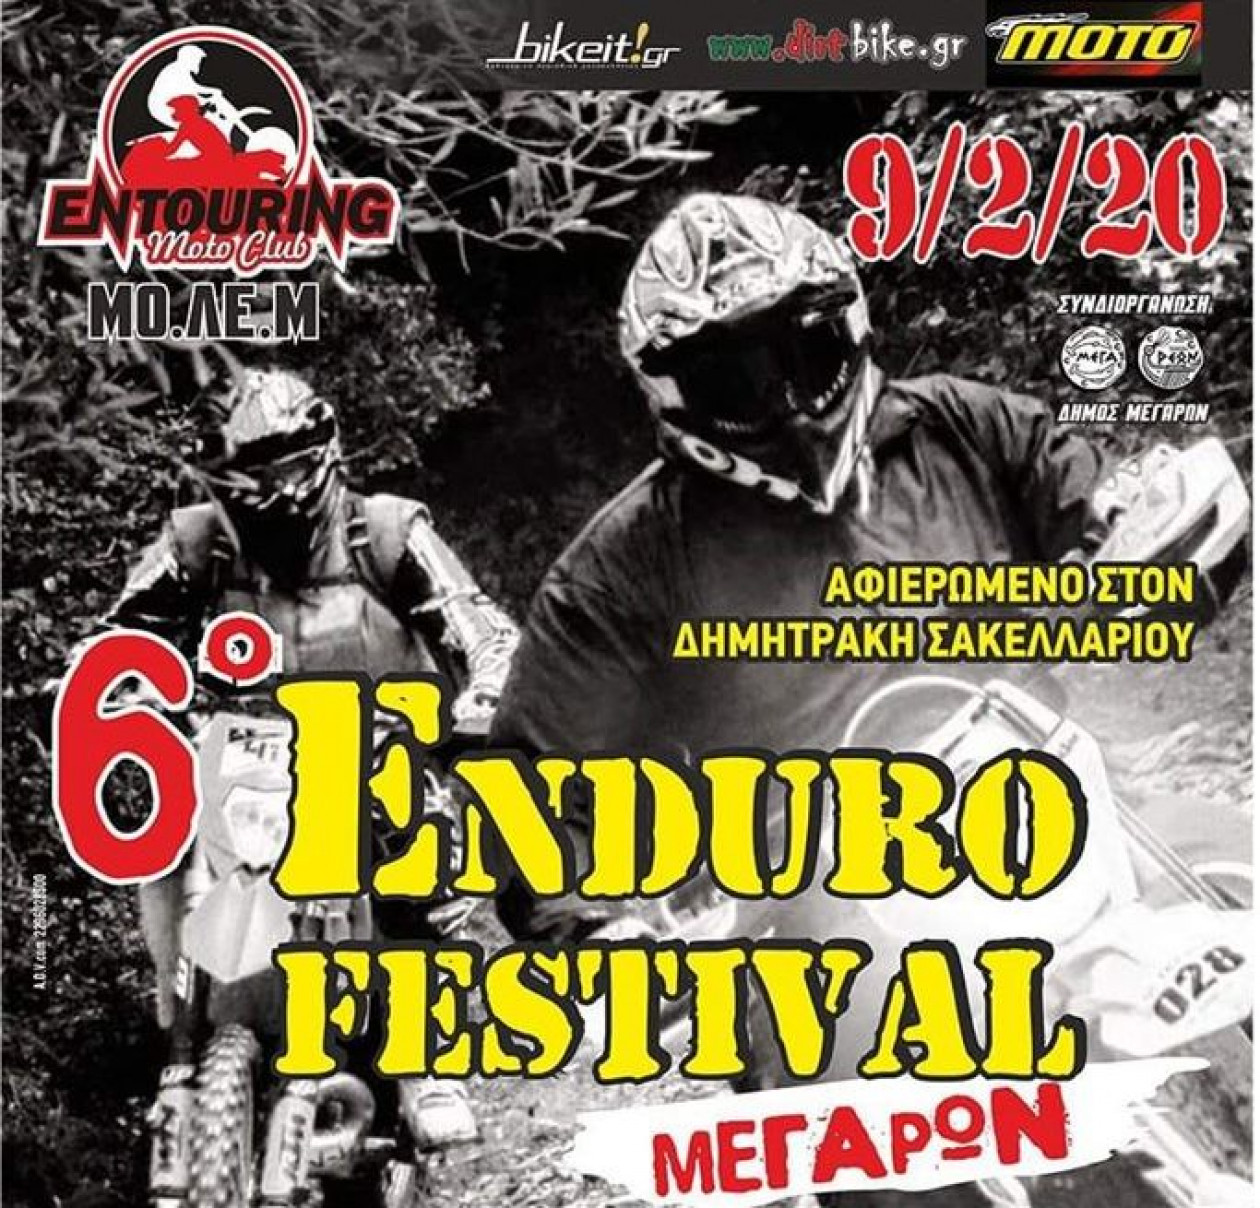 6ο Enduro Festival Μεγάρων – Κανονισμός και όλες οι χρήσιμες πληροφορίες